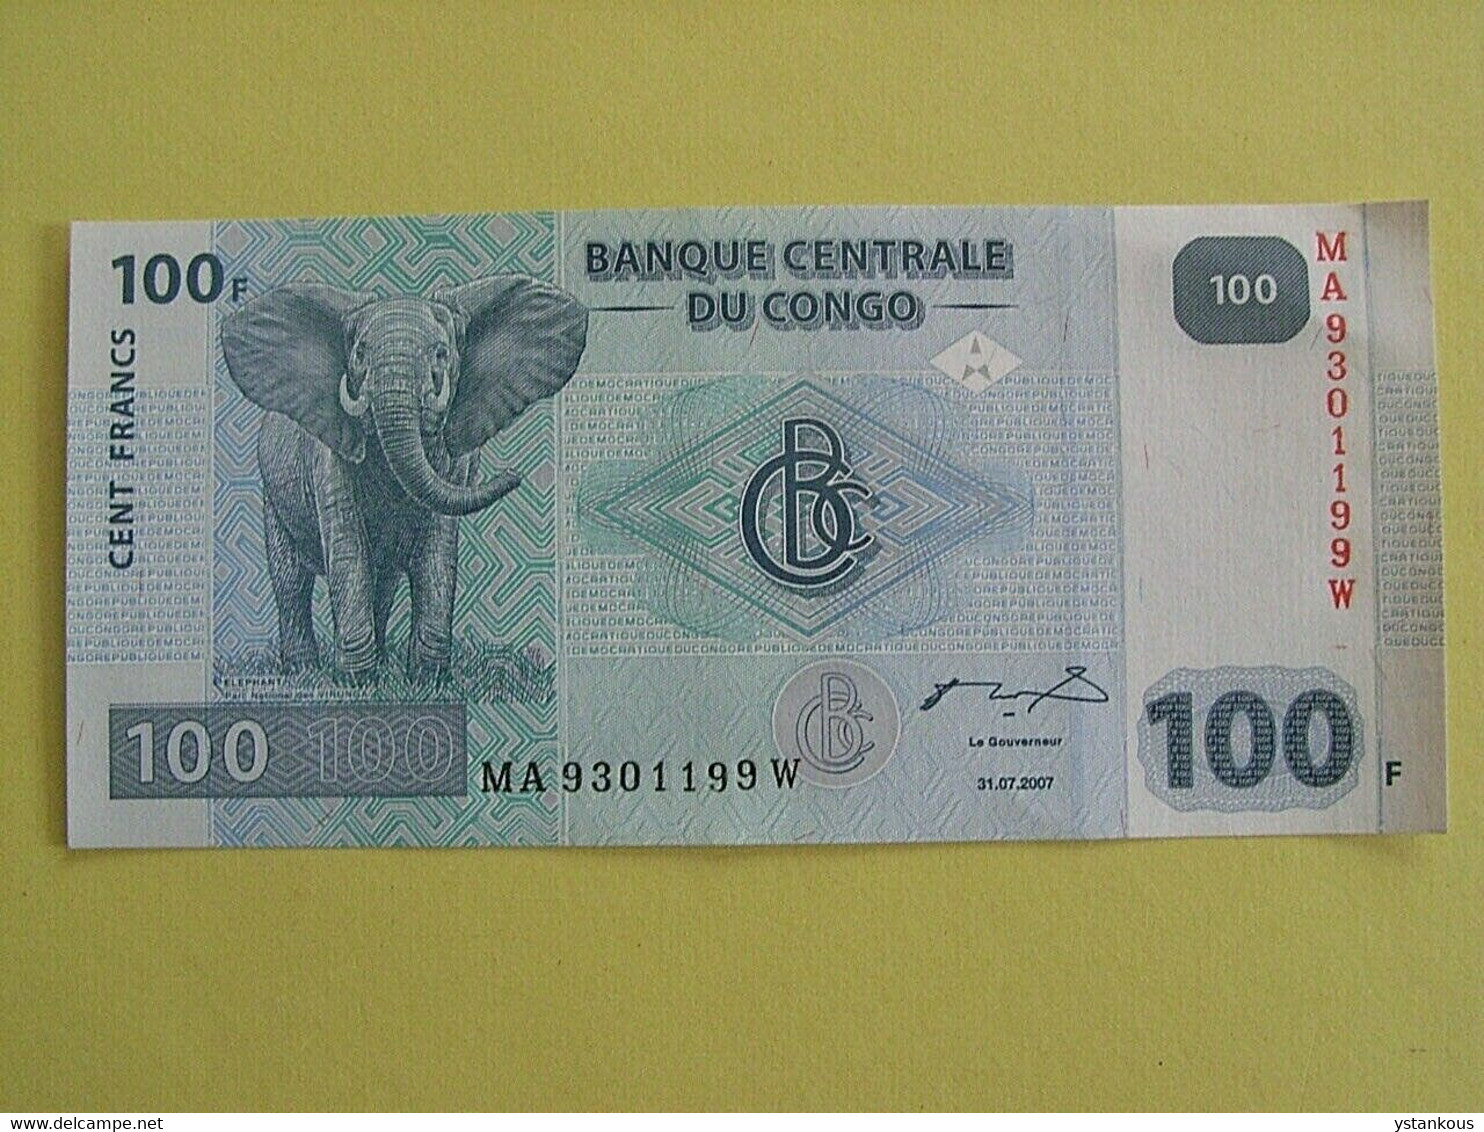 Billet De 100 Francs 2007 Banque Centrale Du Congo. - Non Classés